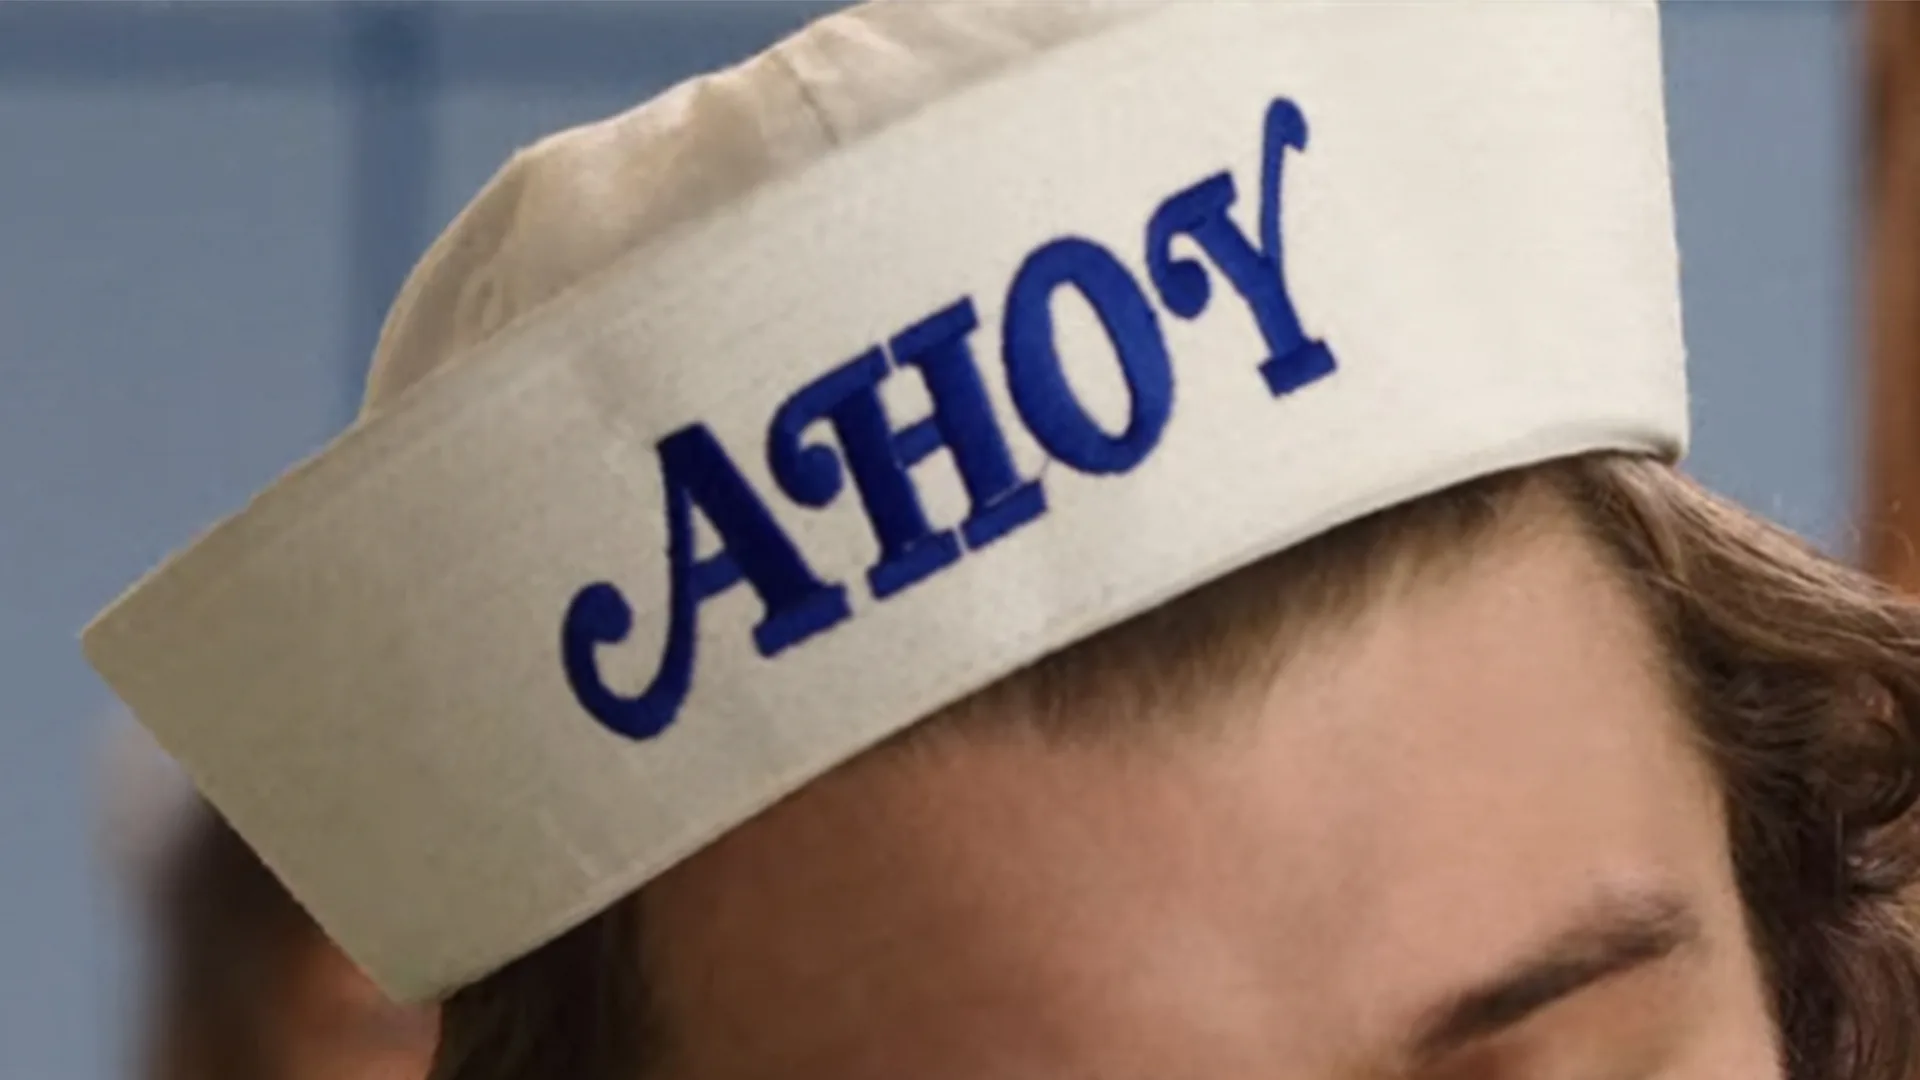 A sailor's hat that says 'ahoy'